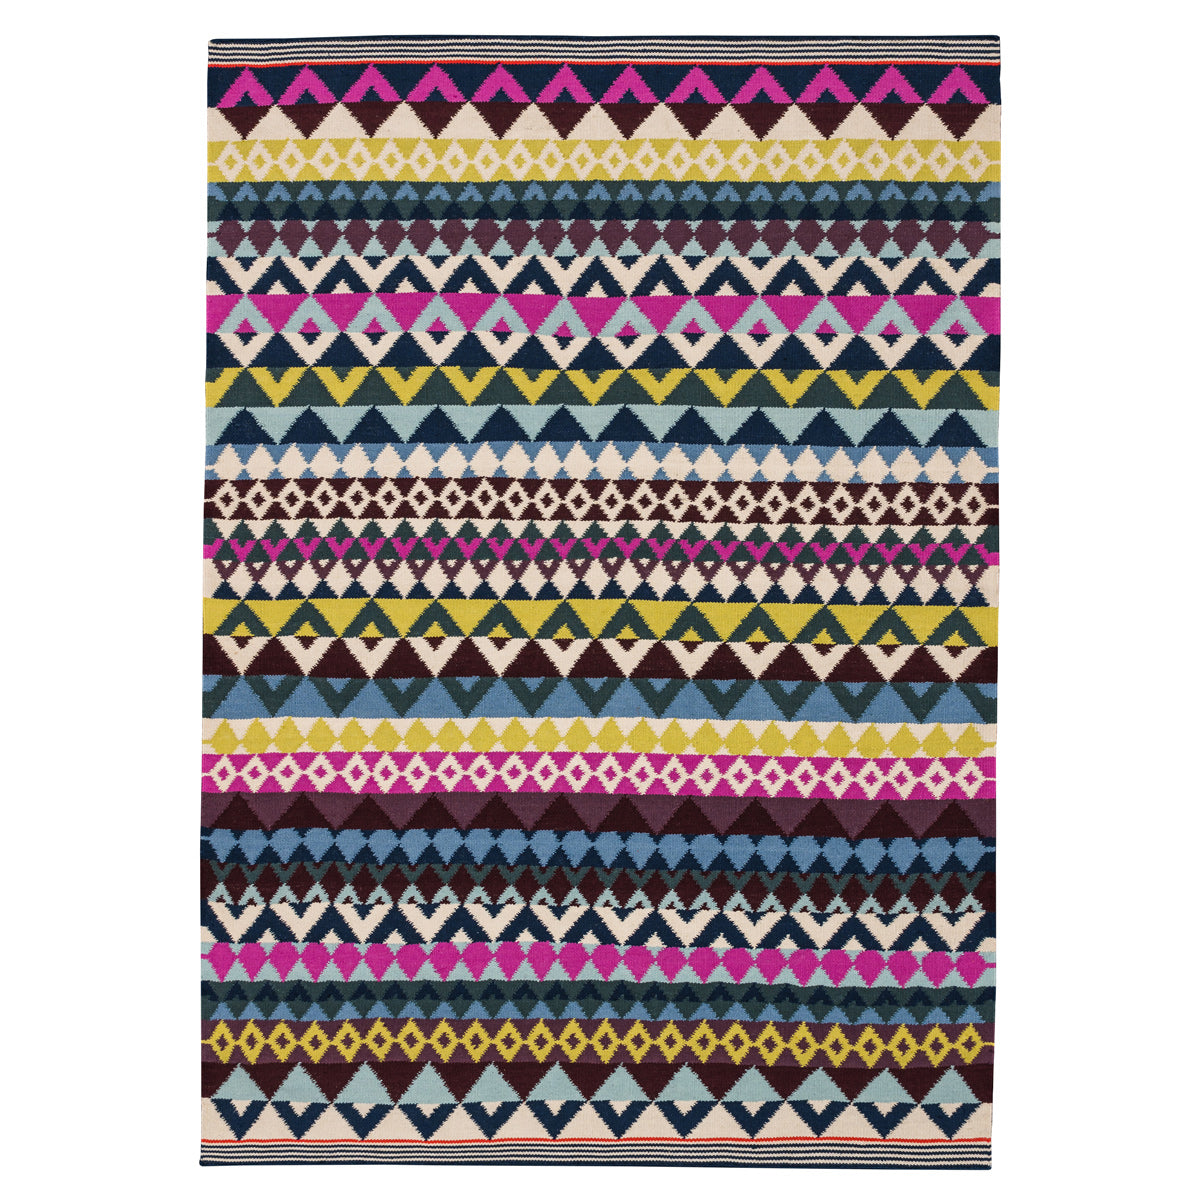 Geometric pattern, colourful rugs, designer rugs, luxury rugs, wool rugs, geometric rug, modern rug, yellow rug, pink rug, blue rug, purple rug